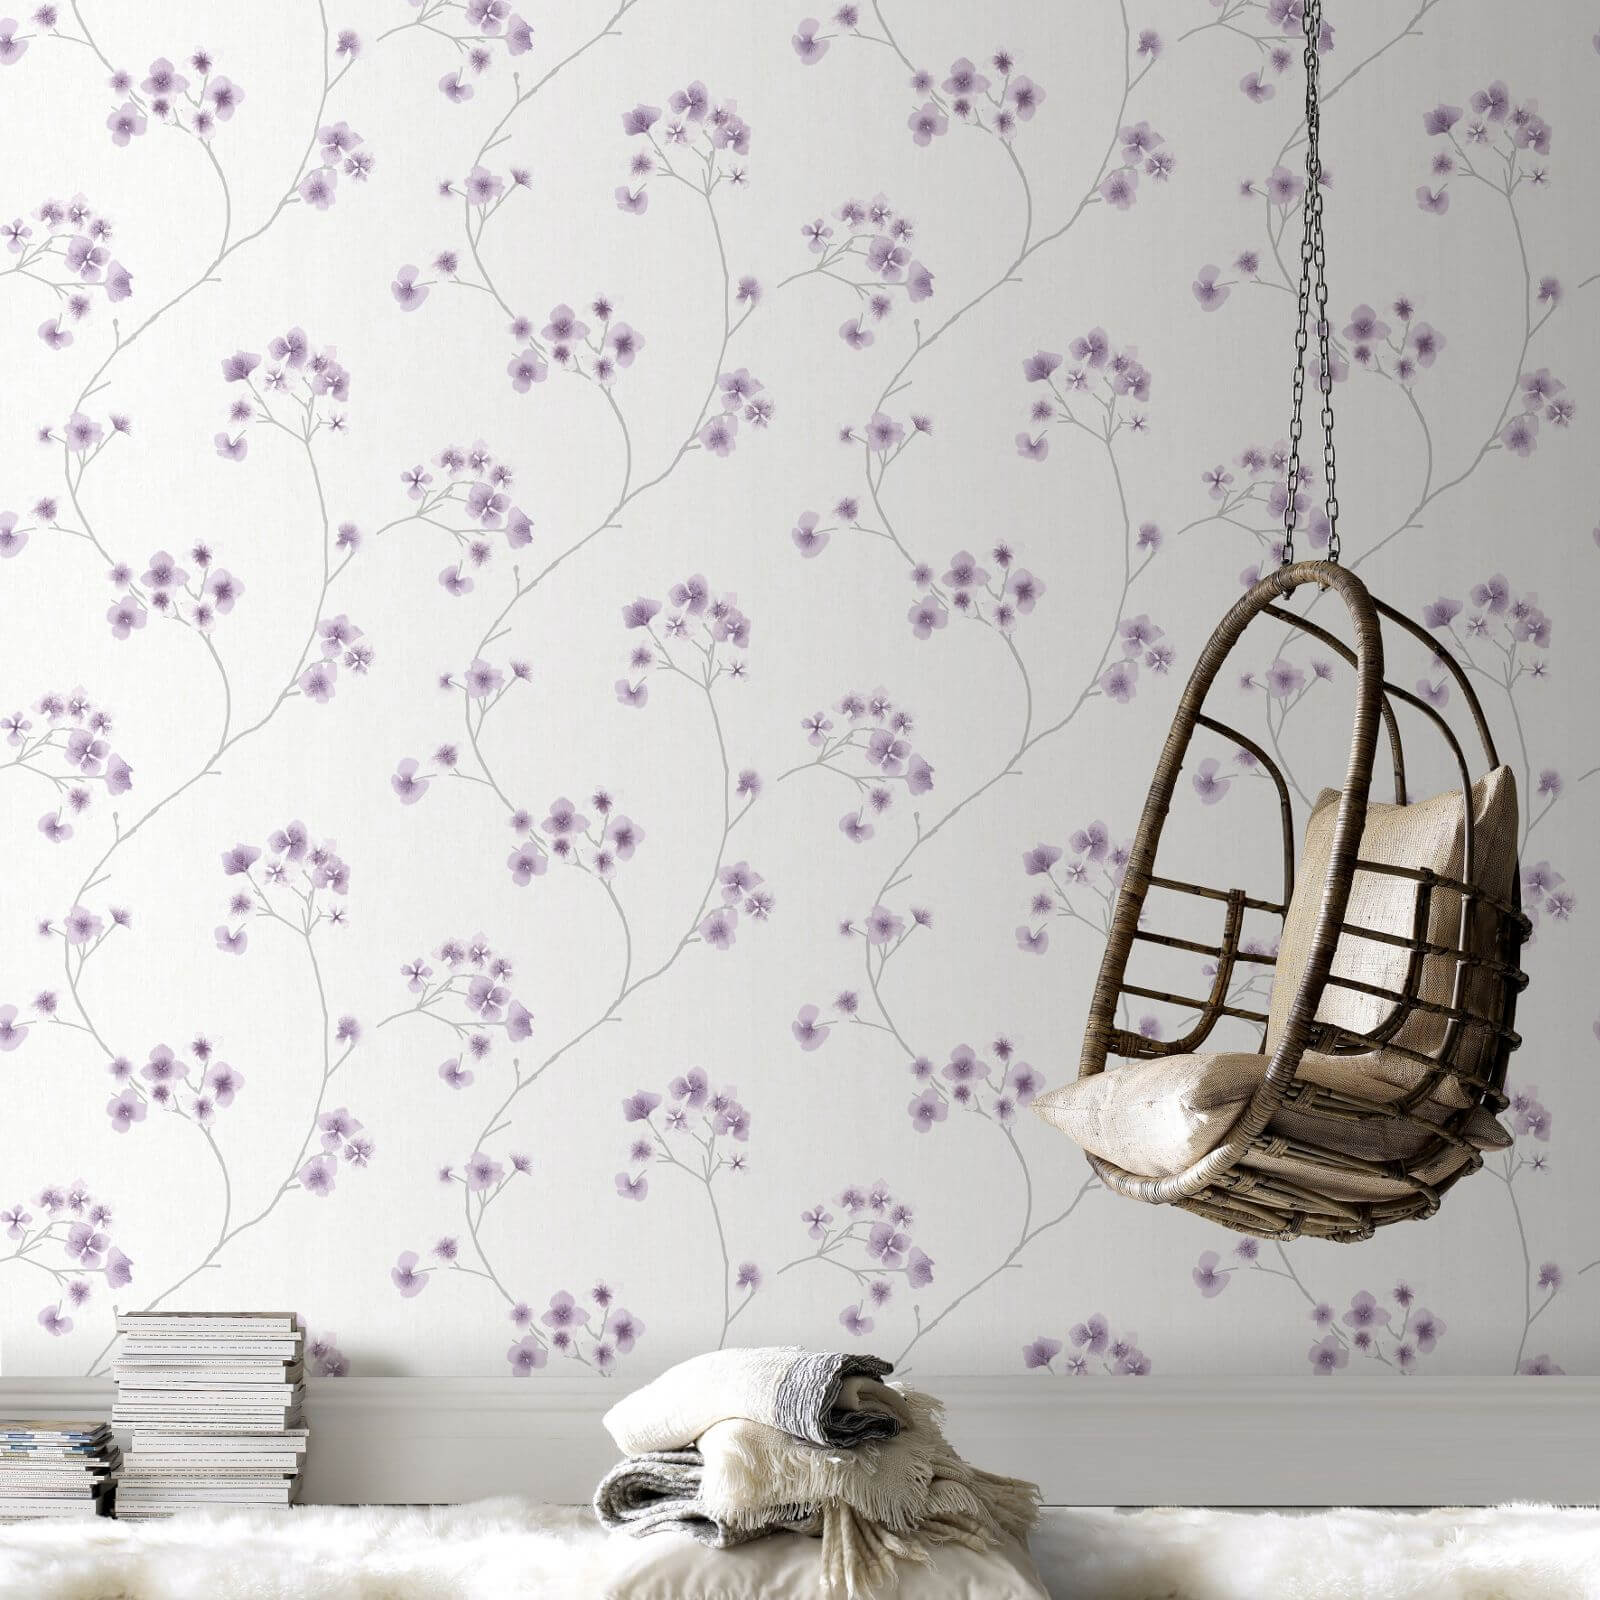 Superfresco Easy Paste the Wall Innocence Radiance Wallpaper - White & Lavender